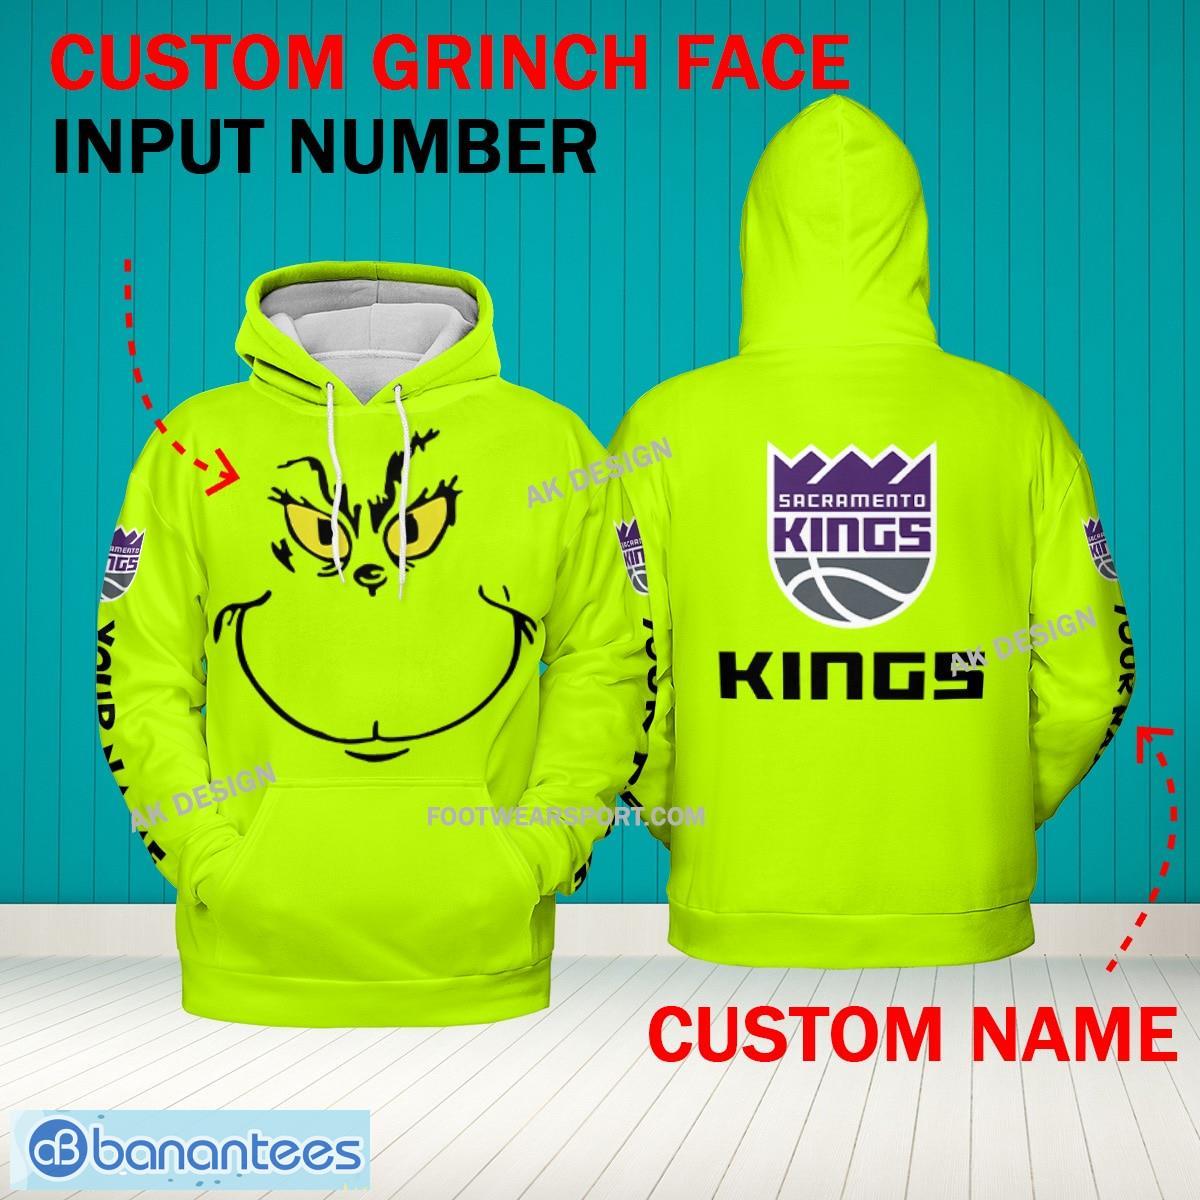 Grinch Face Sacramento Kings 3D Hoodie, Zip Hoodie, Sweater Green AOP Custom Number And Name - Grinch Face NBA Sacramento Kings 3D Hoodie